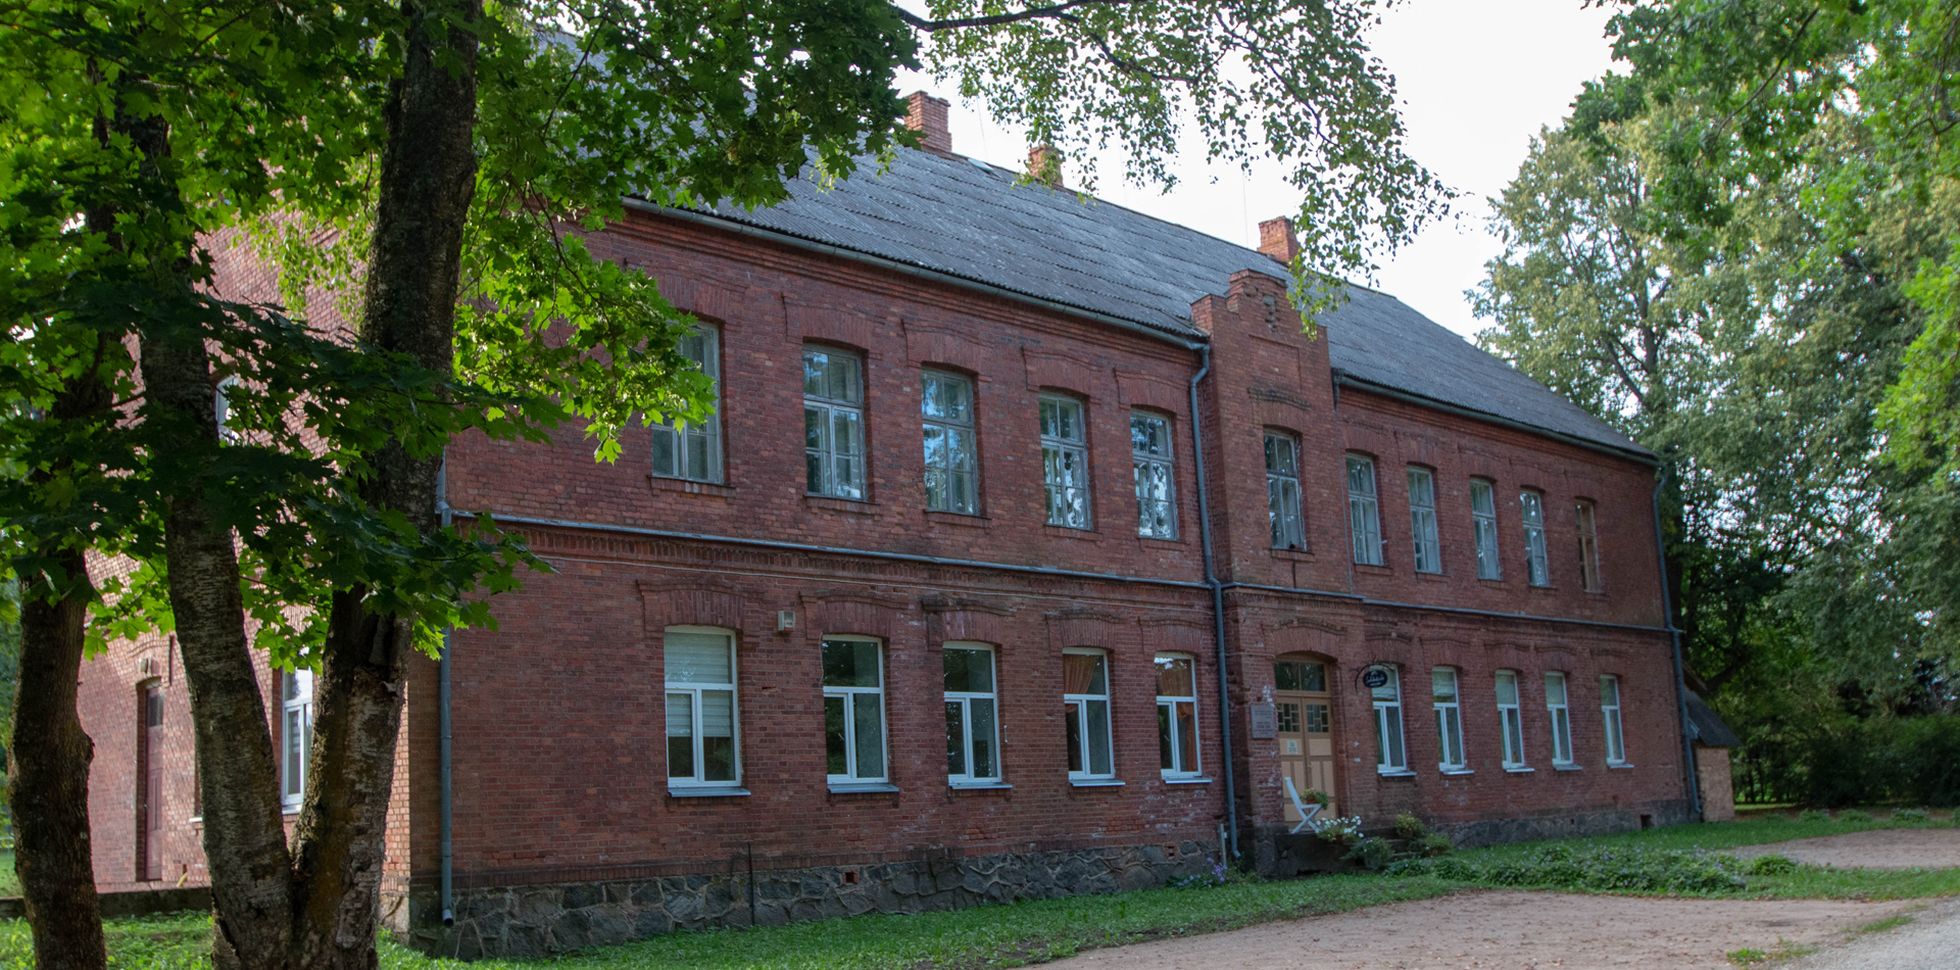 1881. aastal avatud koolimaja on kandnud aja jooksul erinevaid nimesid. Alates 1991. aastast kuni sulgemiseni kandis see Lepistu põhikooli nime. Praegu elab majas perekond Alevi, kes toodab seal Roosiku kaubamärgi all käsitööšokolaadi.